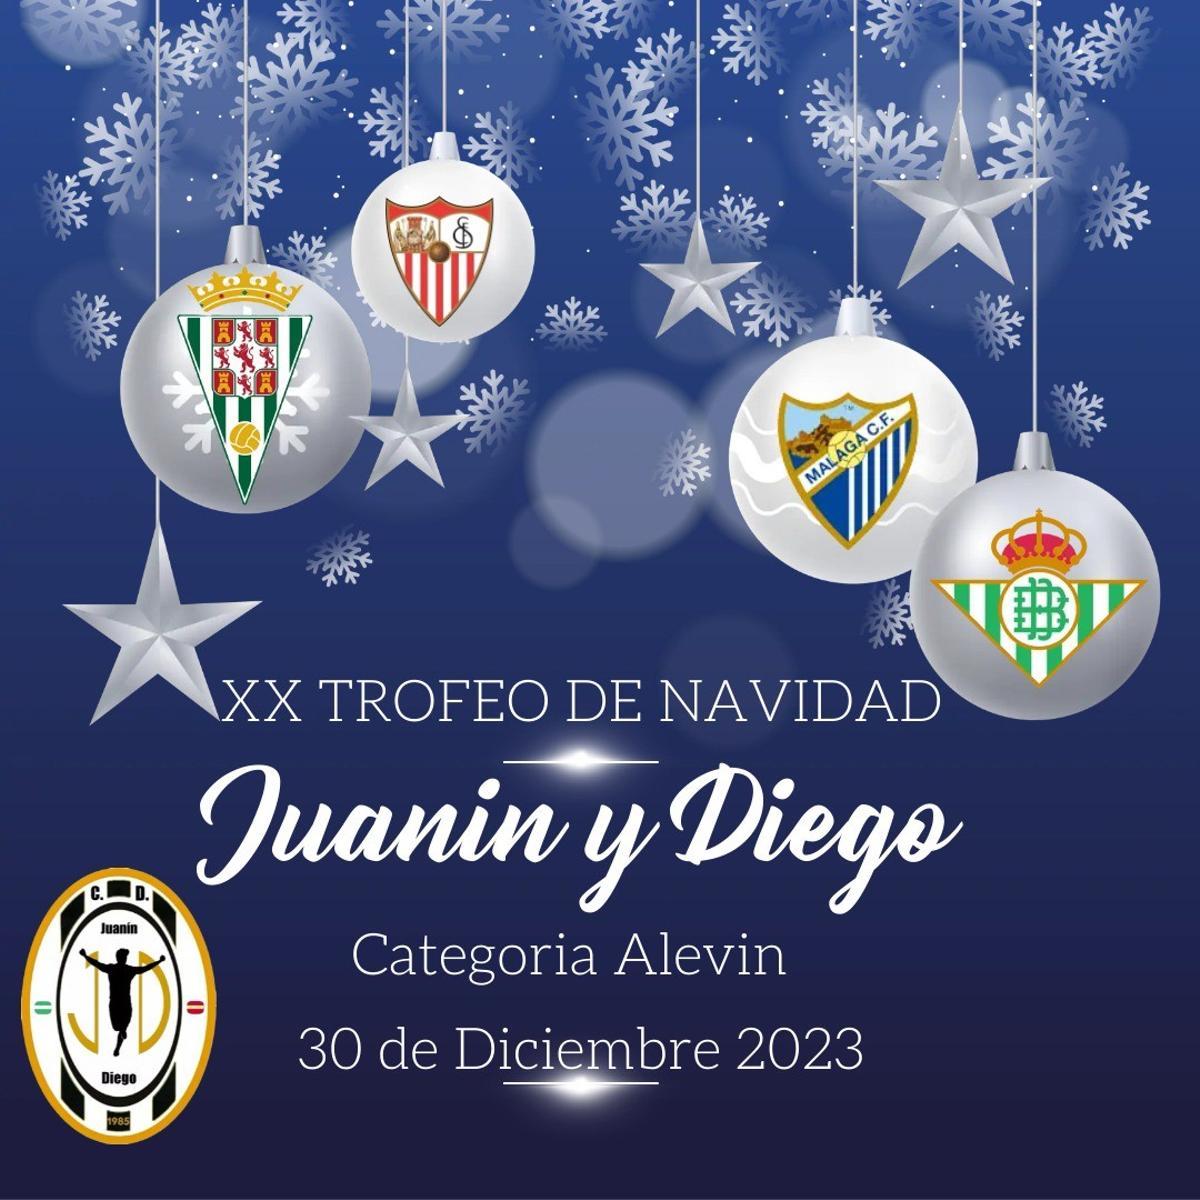 Cartel del Torneo de Navidad alevín del CD Juanín y Diego.